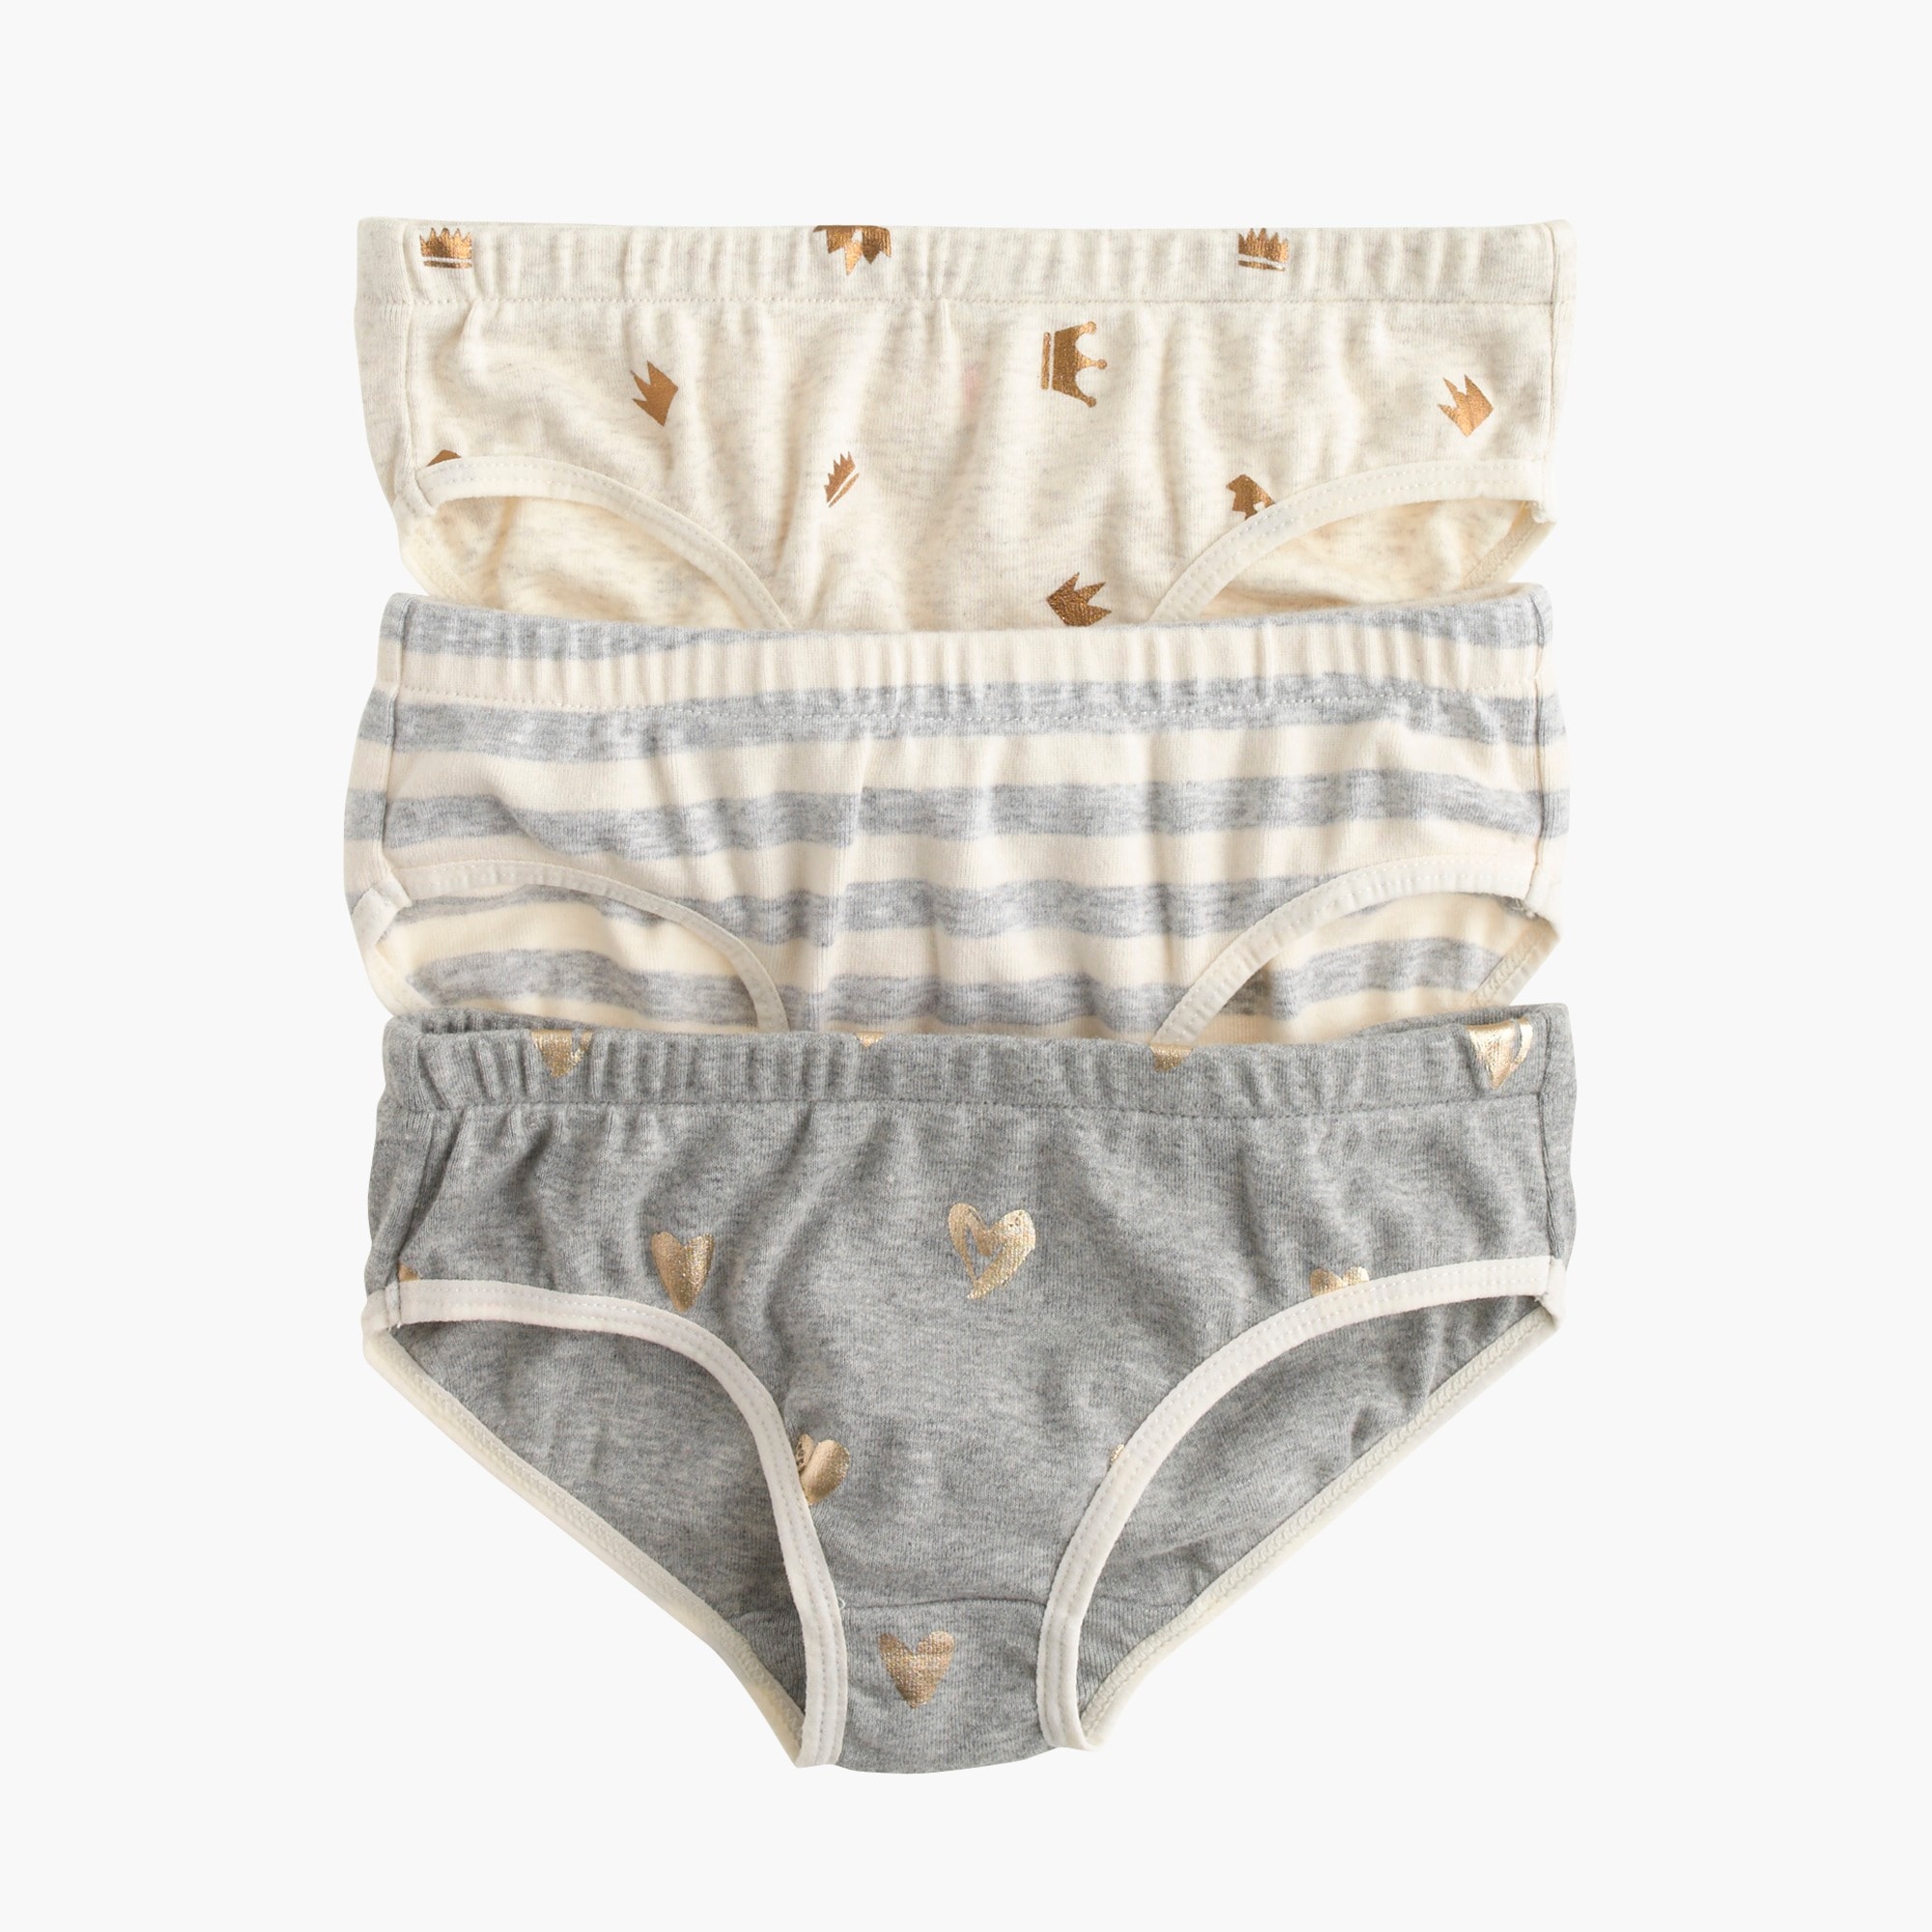 Girls' underwear three-pack in stripe heart